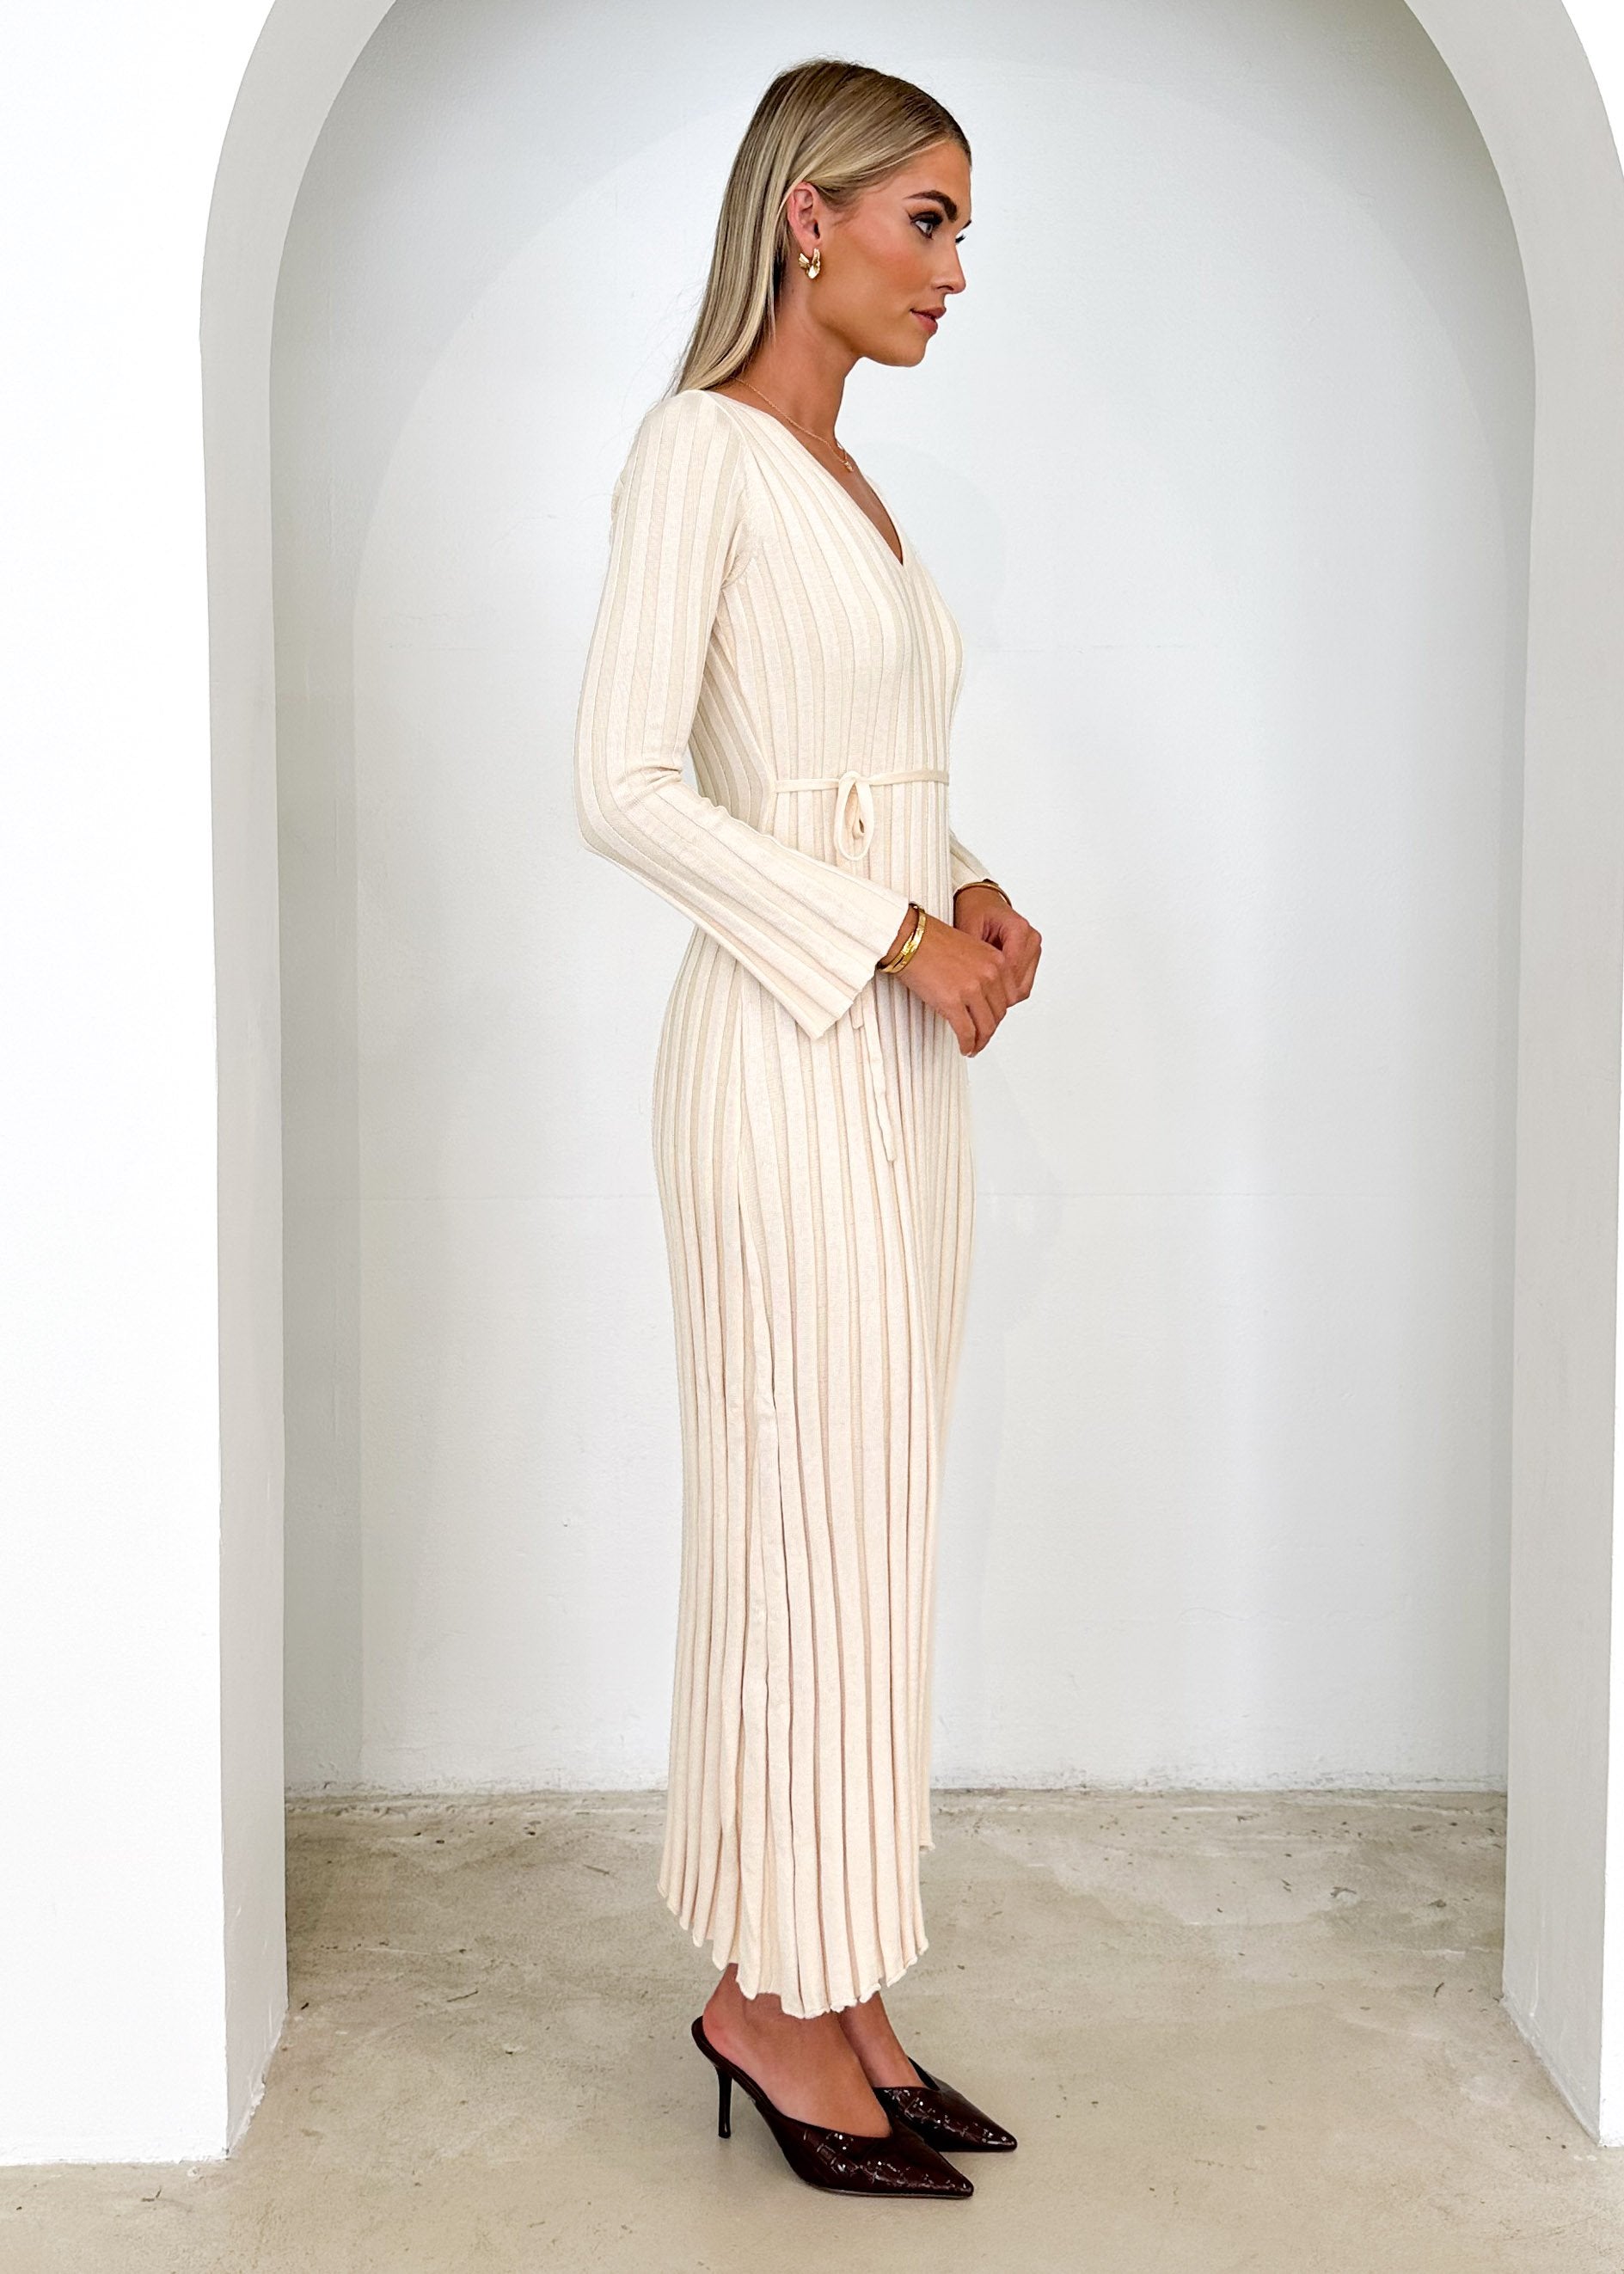 Jelsoe Knit Midi Dress - Cream